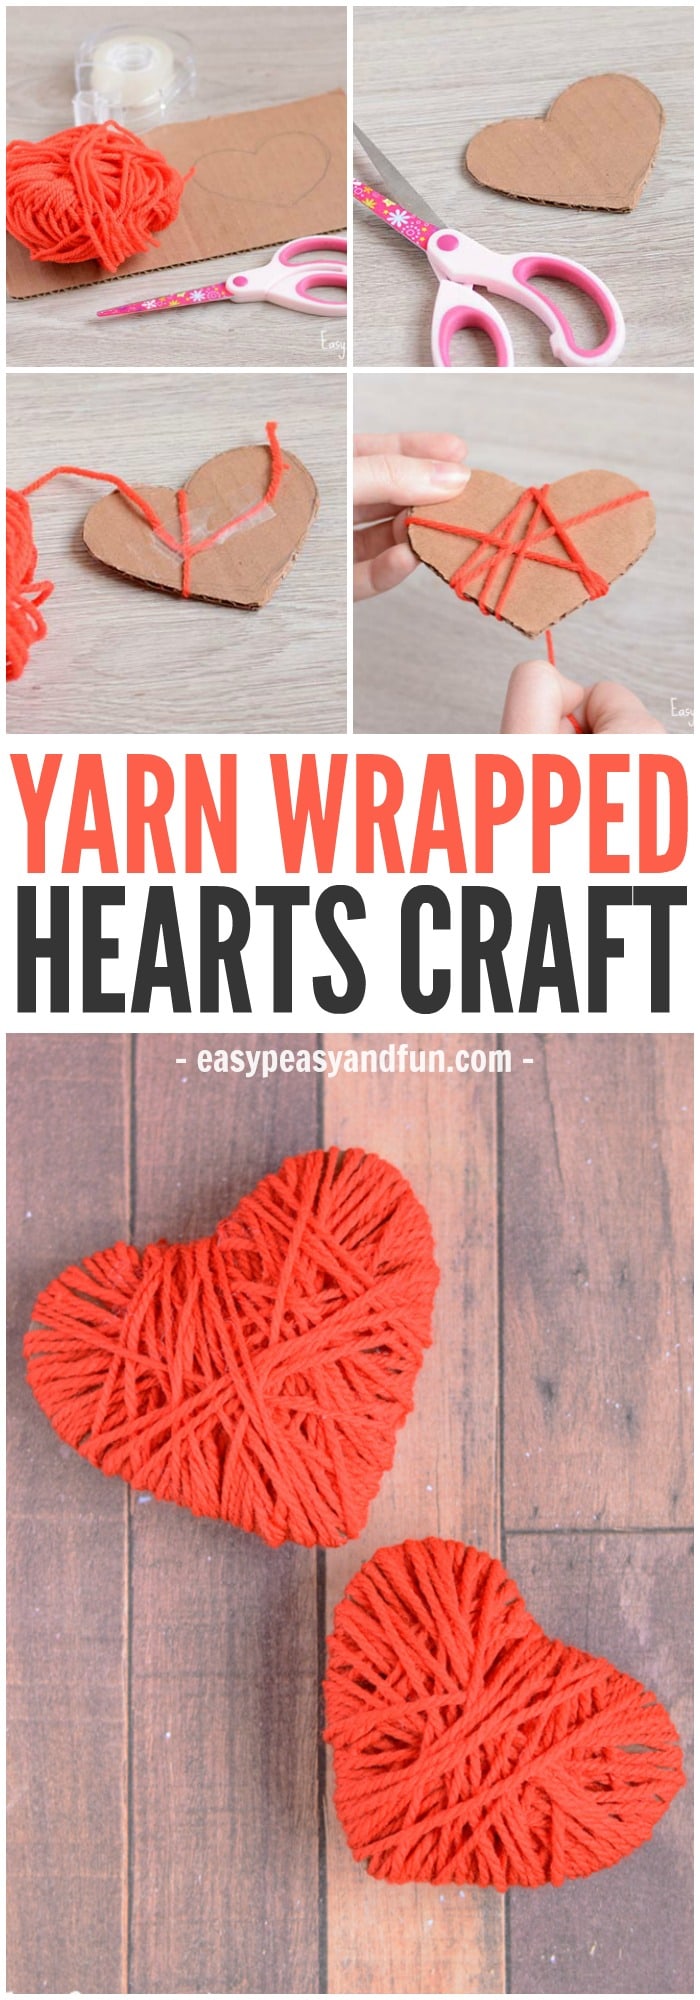 Cute yarn wrapped heart